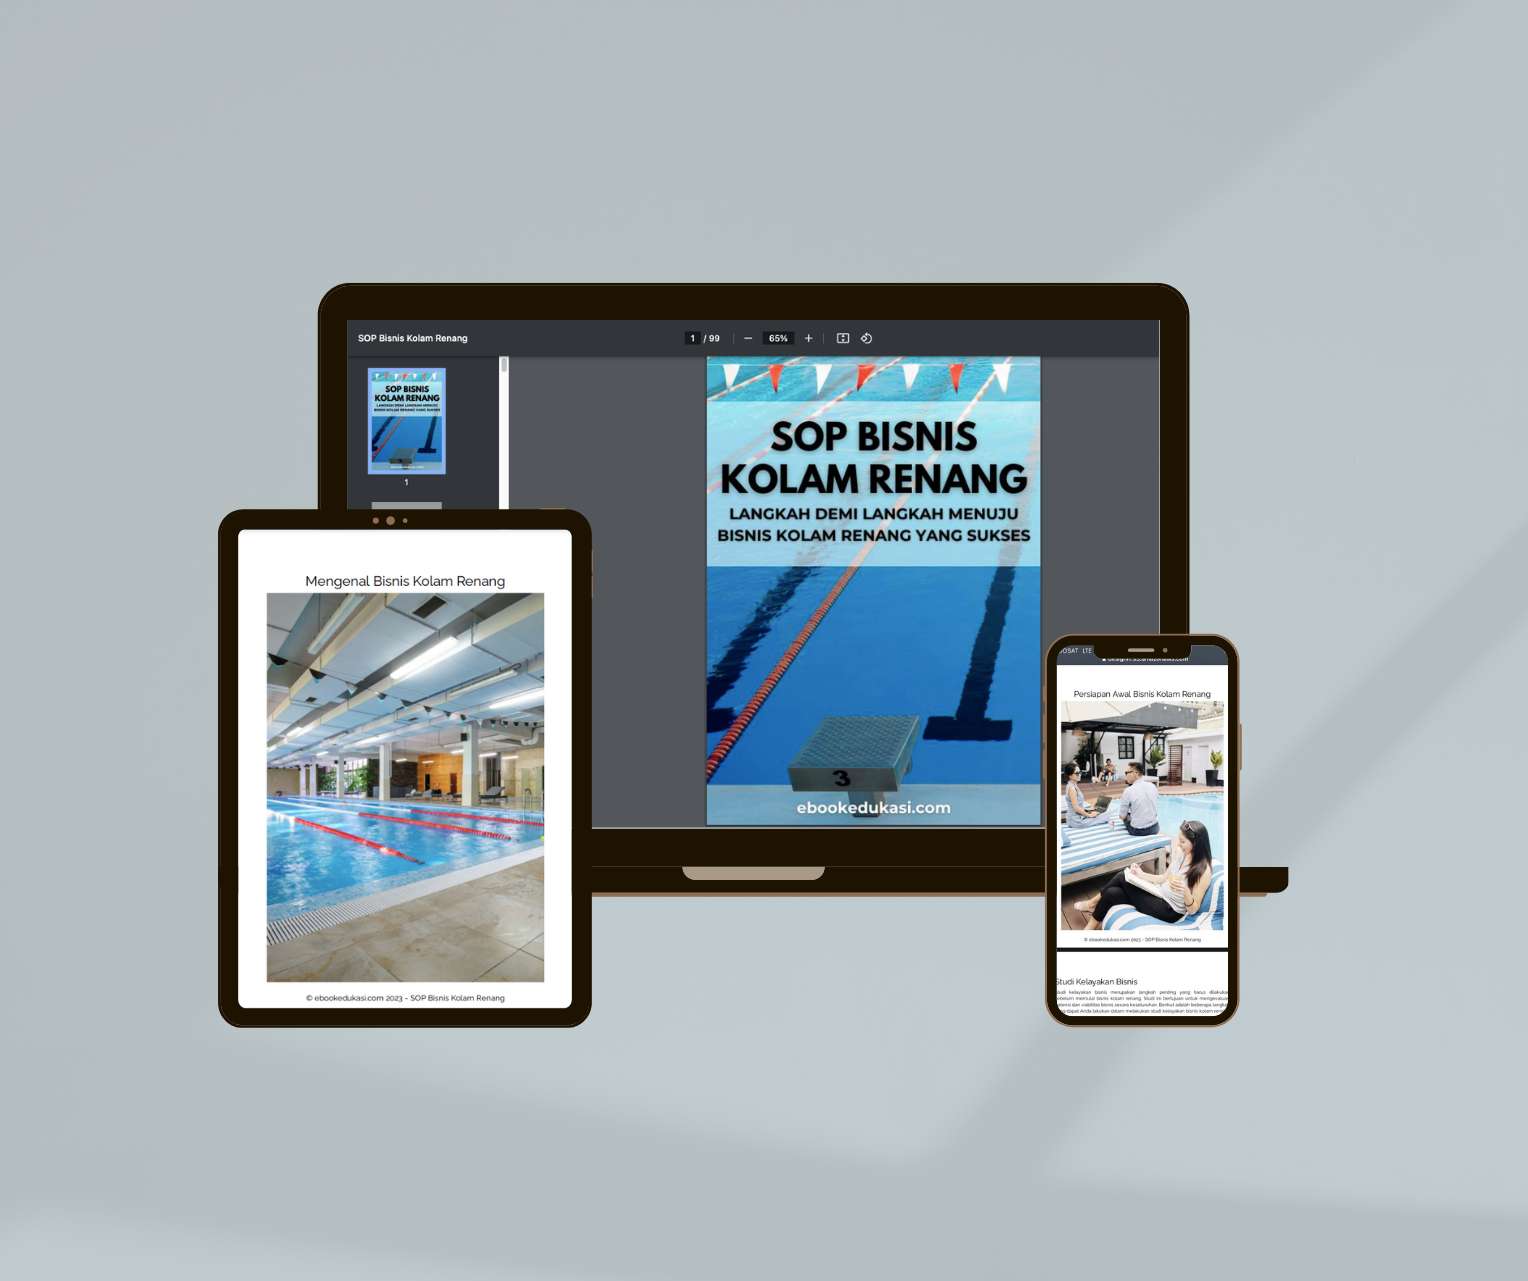 Ebook SOP Bisnis Kolam Renang untuk Sukses Berkelanjutan